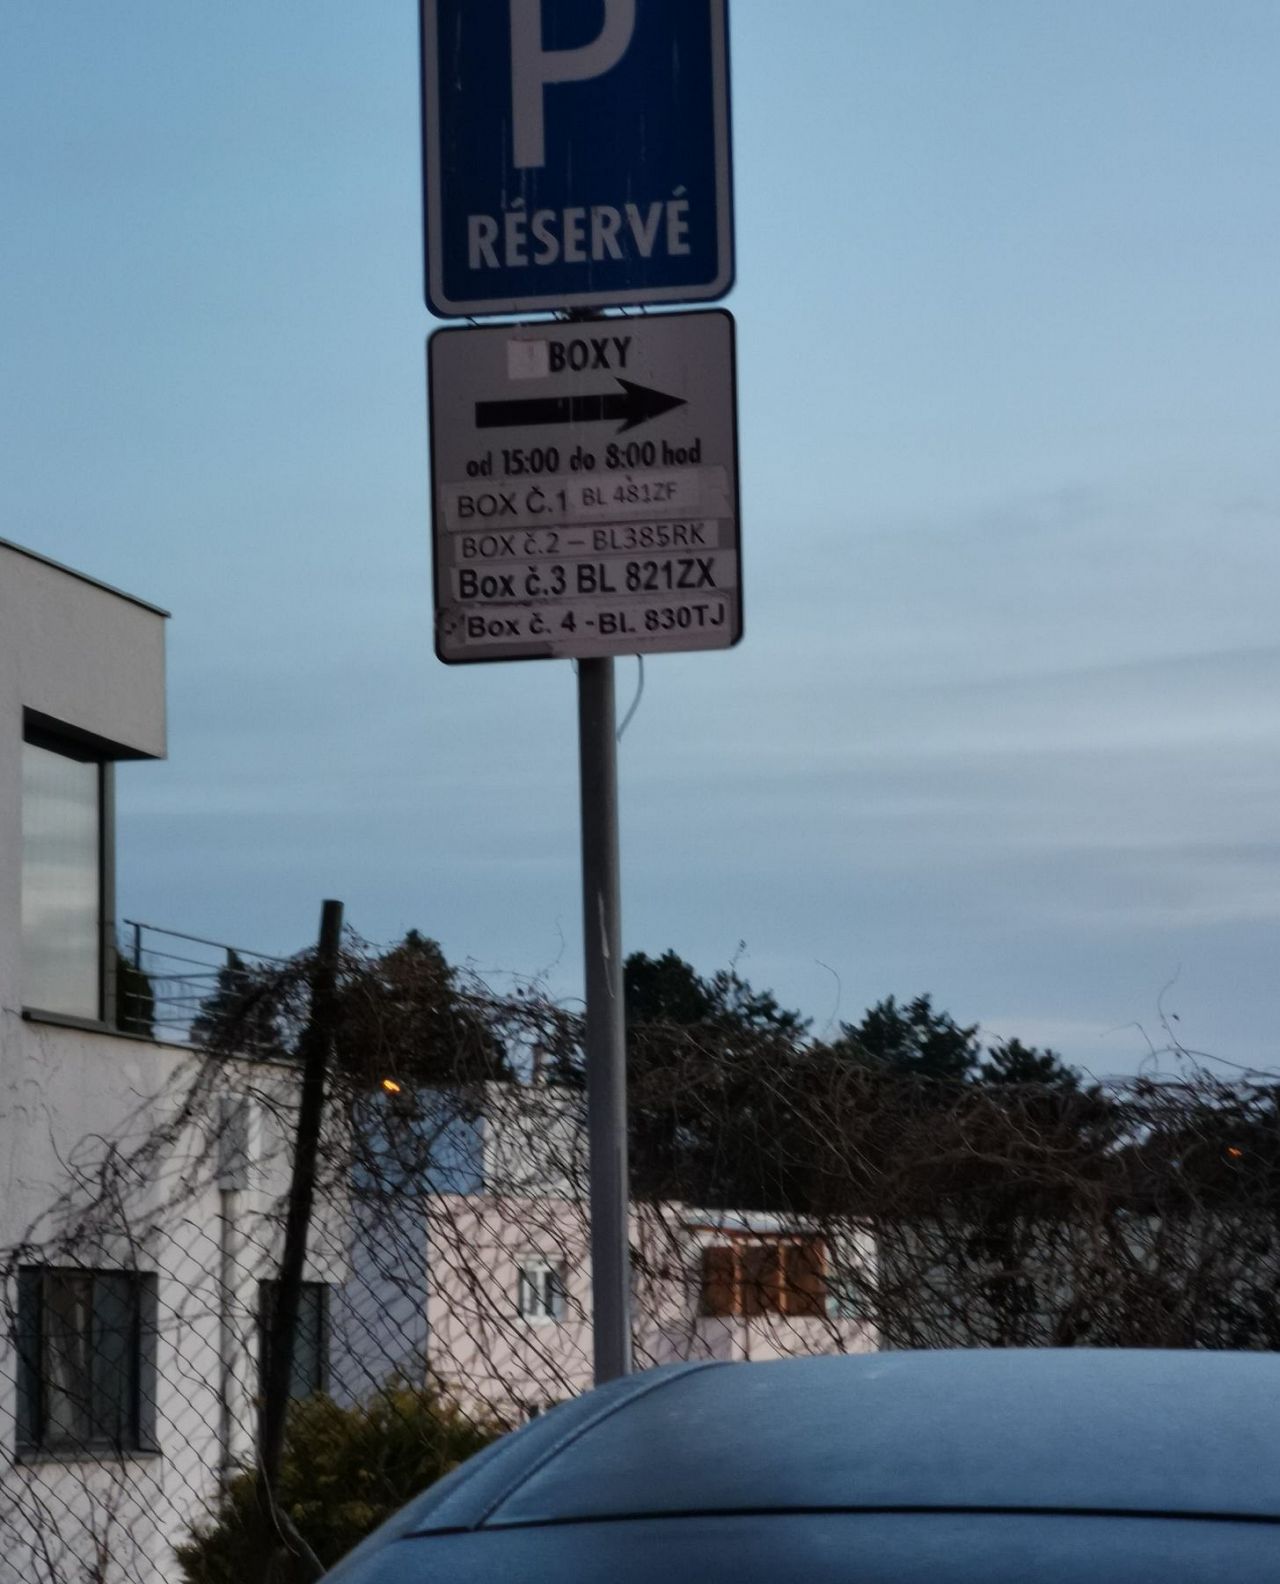 Overenie vyhr. parkovania na ul. Nad lúčkami 34, Karlova Ves, Bratislava |  Odkazprestarostu.sk